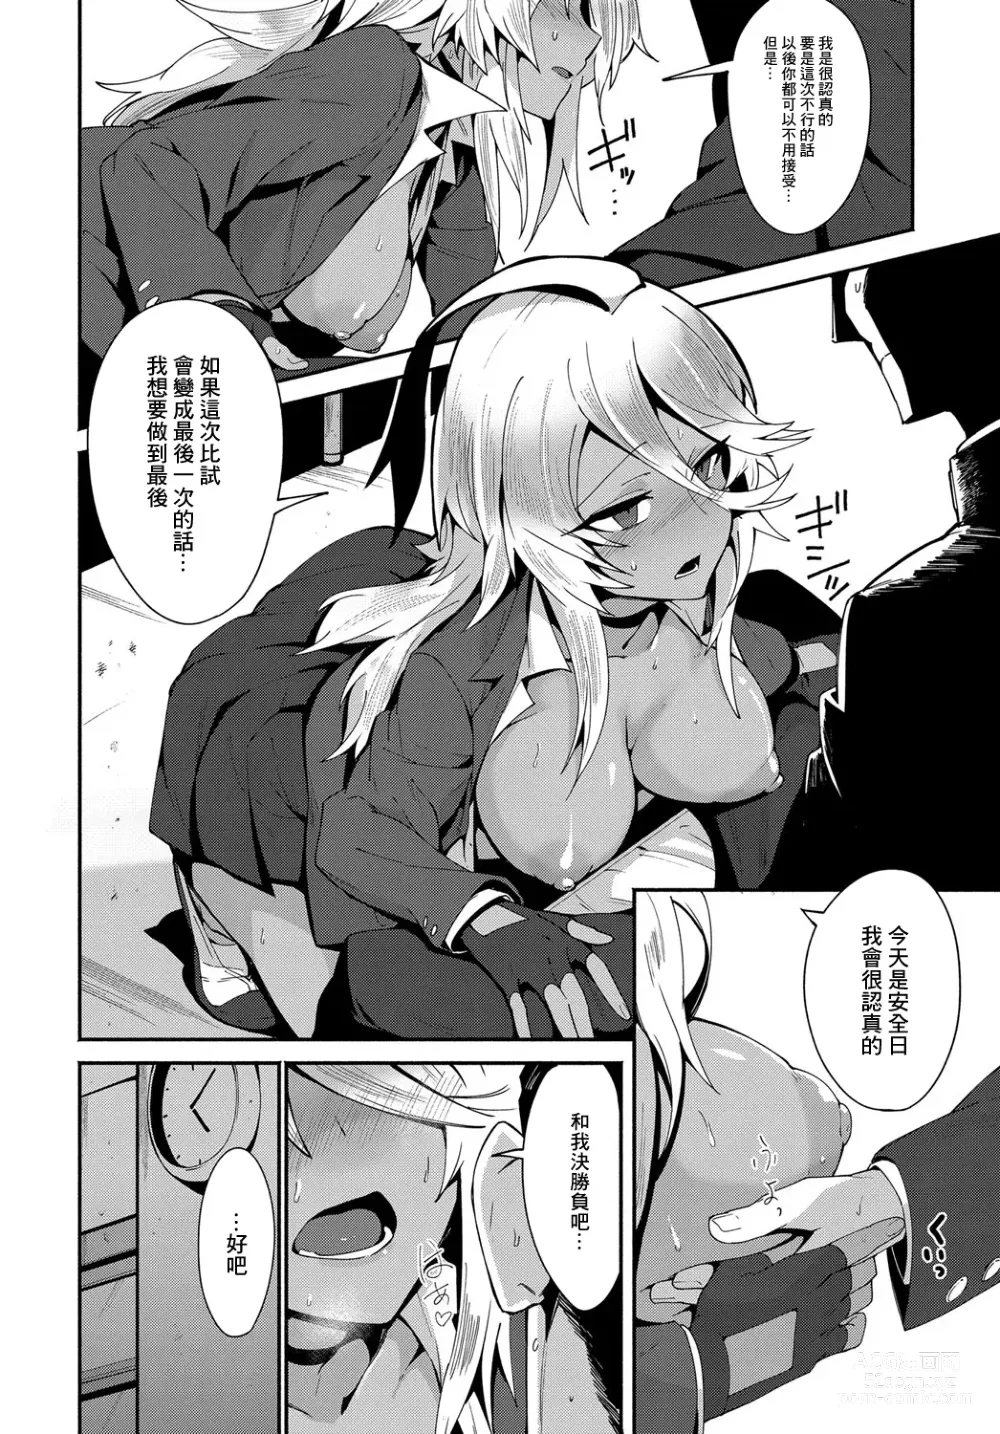 Page 8 of manga AMI FIGHT